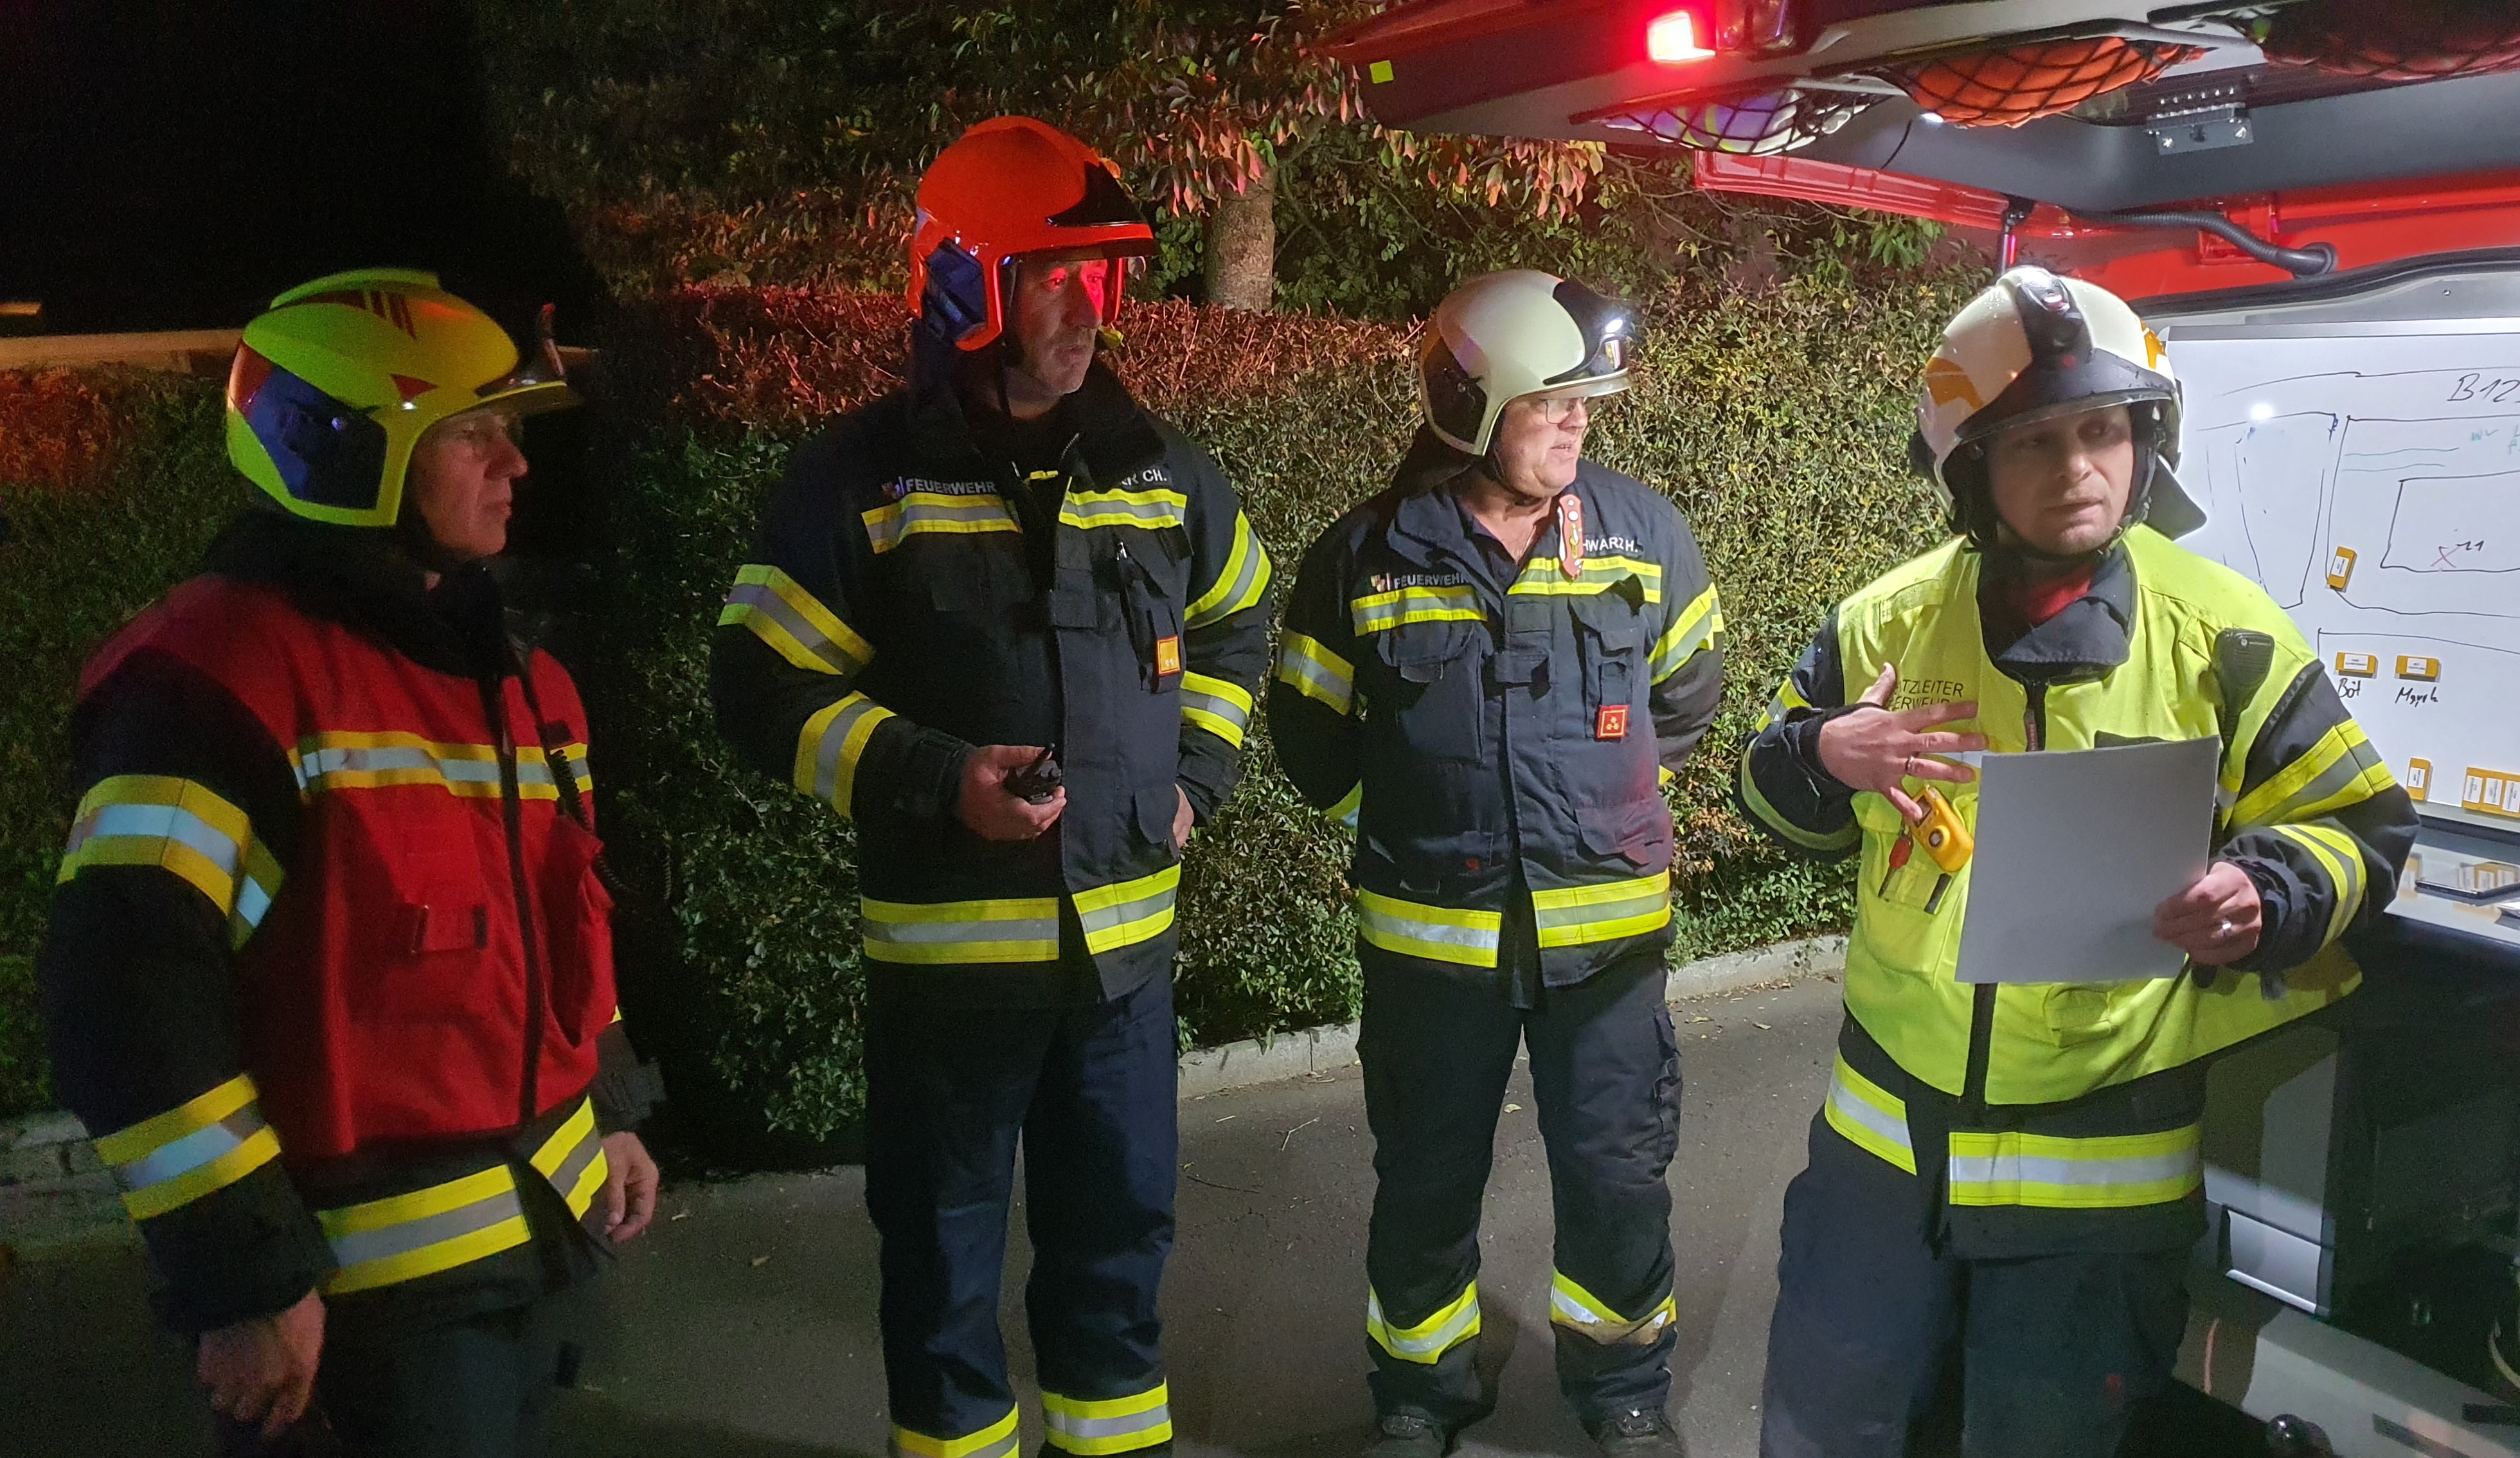 26.10.2021 - EINSATZ: Mordverdächtiger warf sich vor Feuerwehrfahrzeug